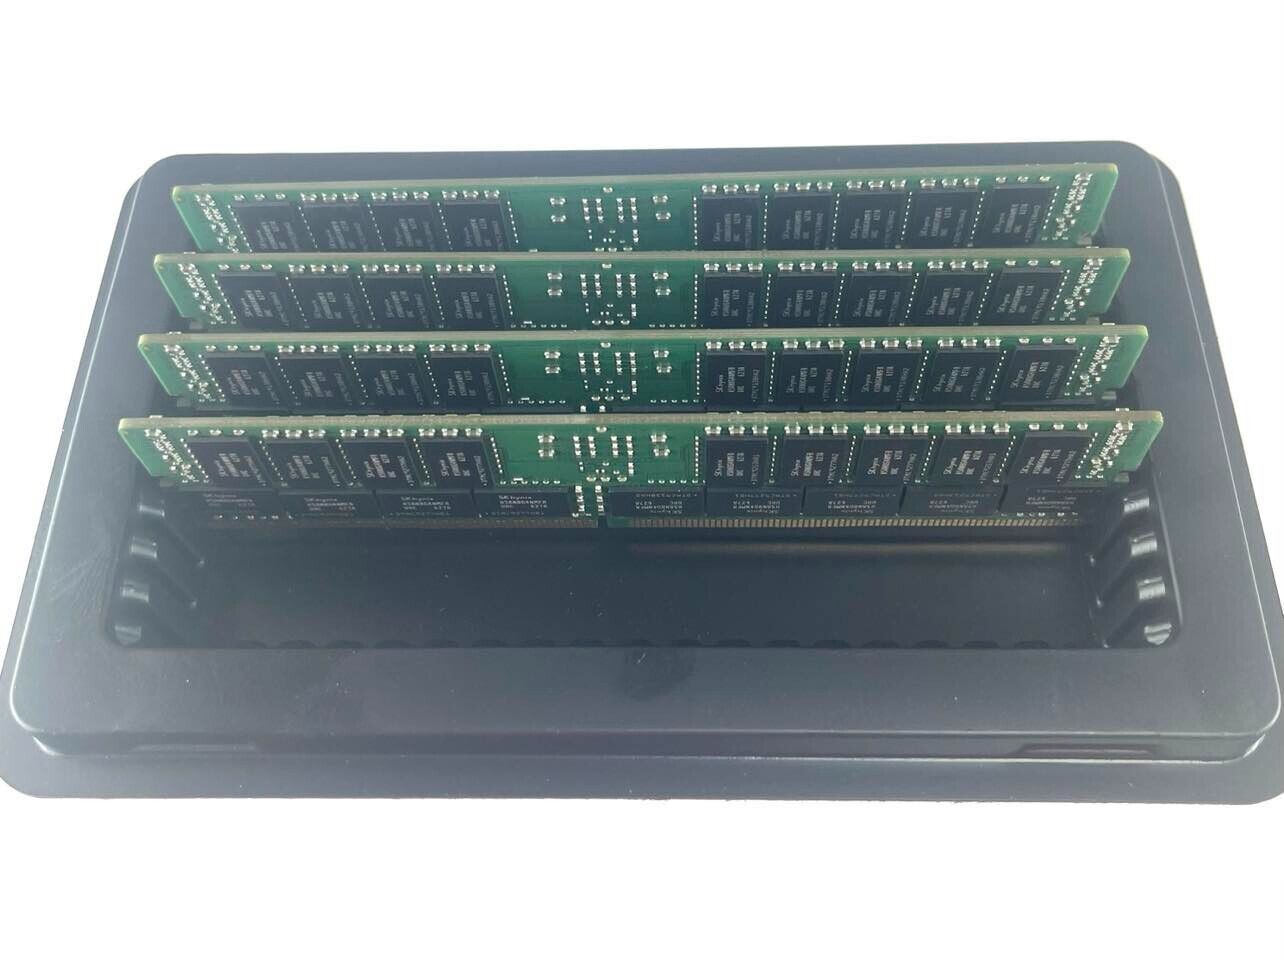 Lot of 4 Hynix 32GB DDR4 PC4-2400T 2Rx4 ECC REG DIMM HMA84GR7MFR4N-UH SERVER RAM